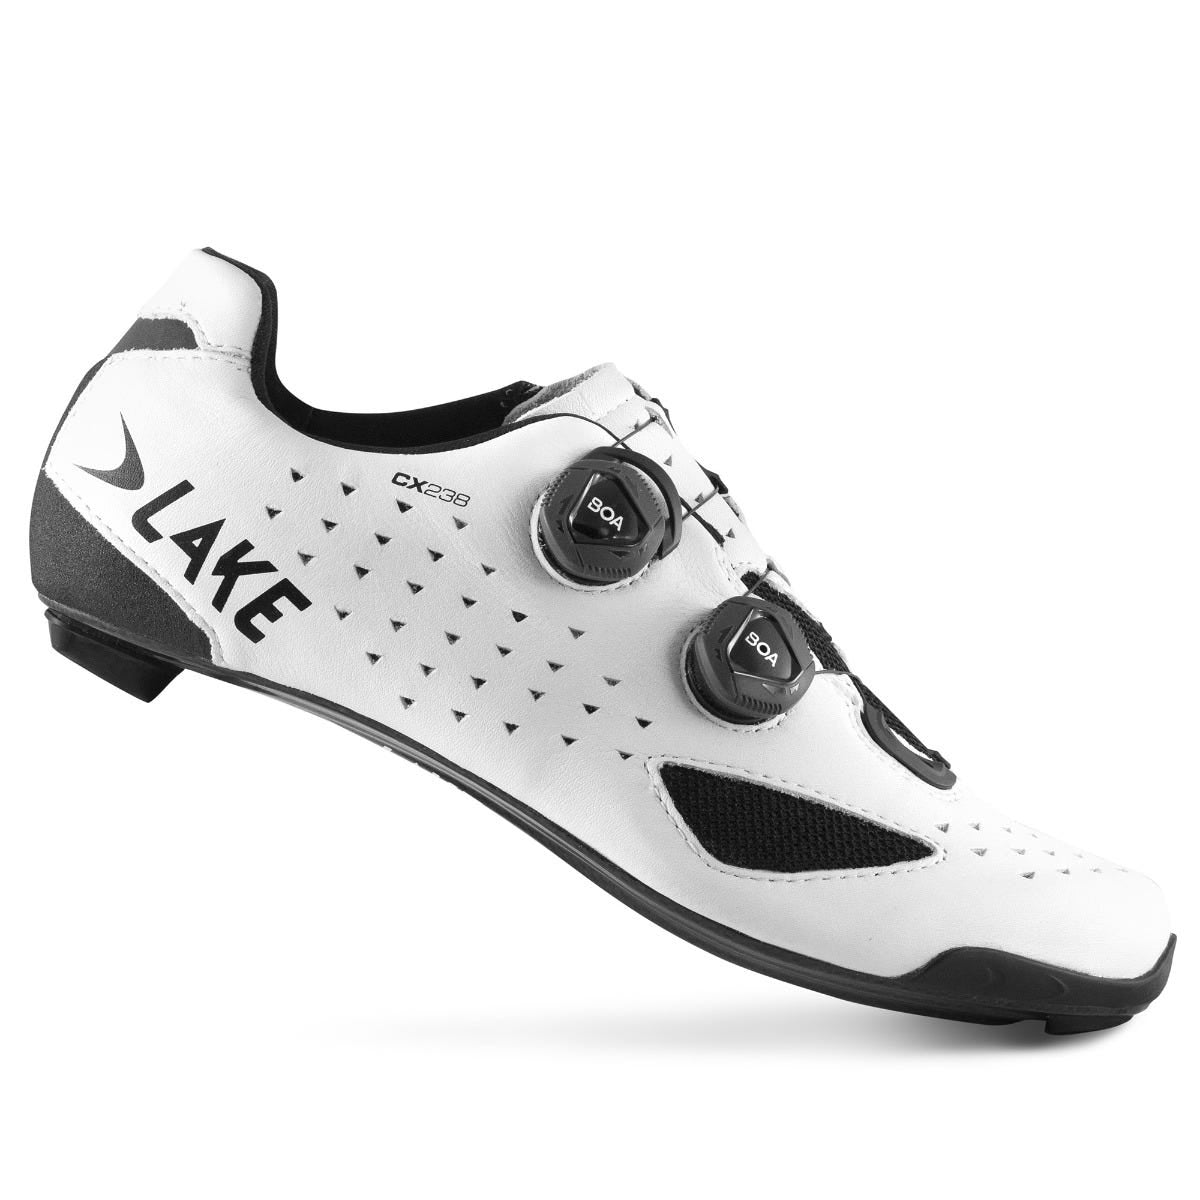 Lake CX238 Carbon Men's SPD Road Cycling Shoes White - EU 44.5